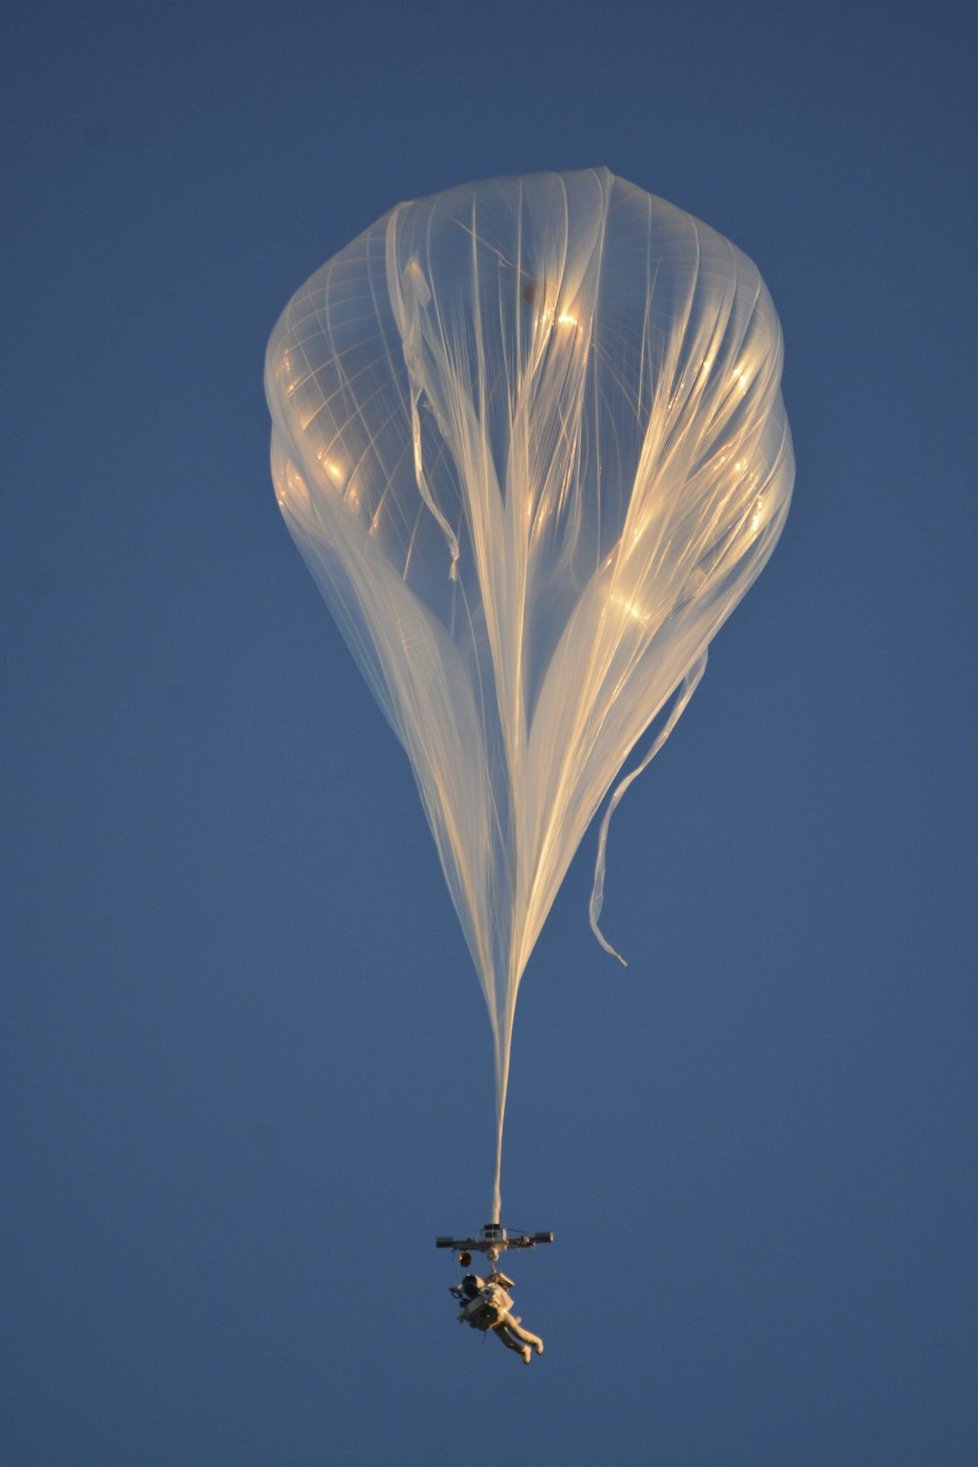 Alana vynesl do výšky 41 km heliem naplněný balon.